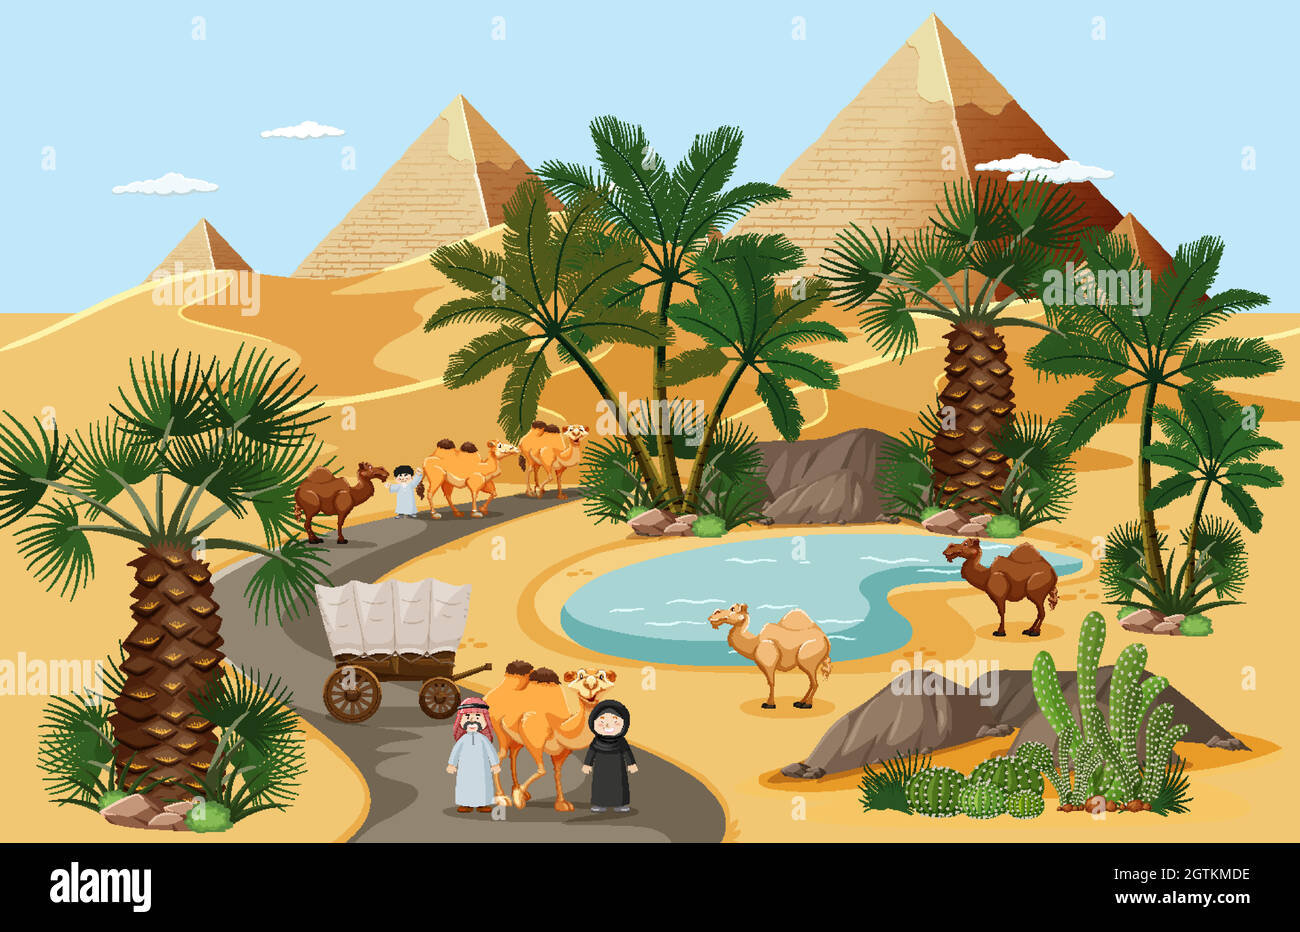 Oasis du désert avec palmiers paysage de la nature Illustration de Vecteur